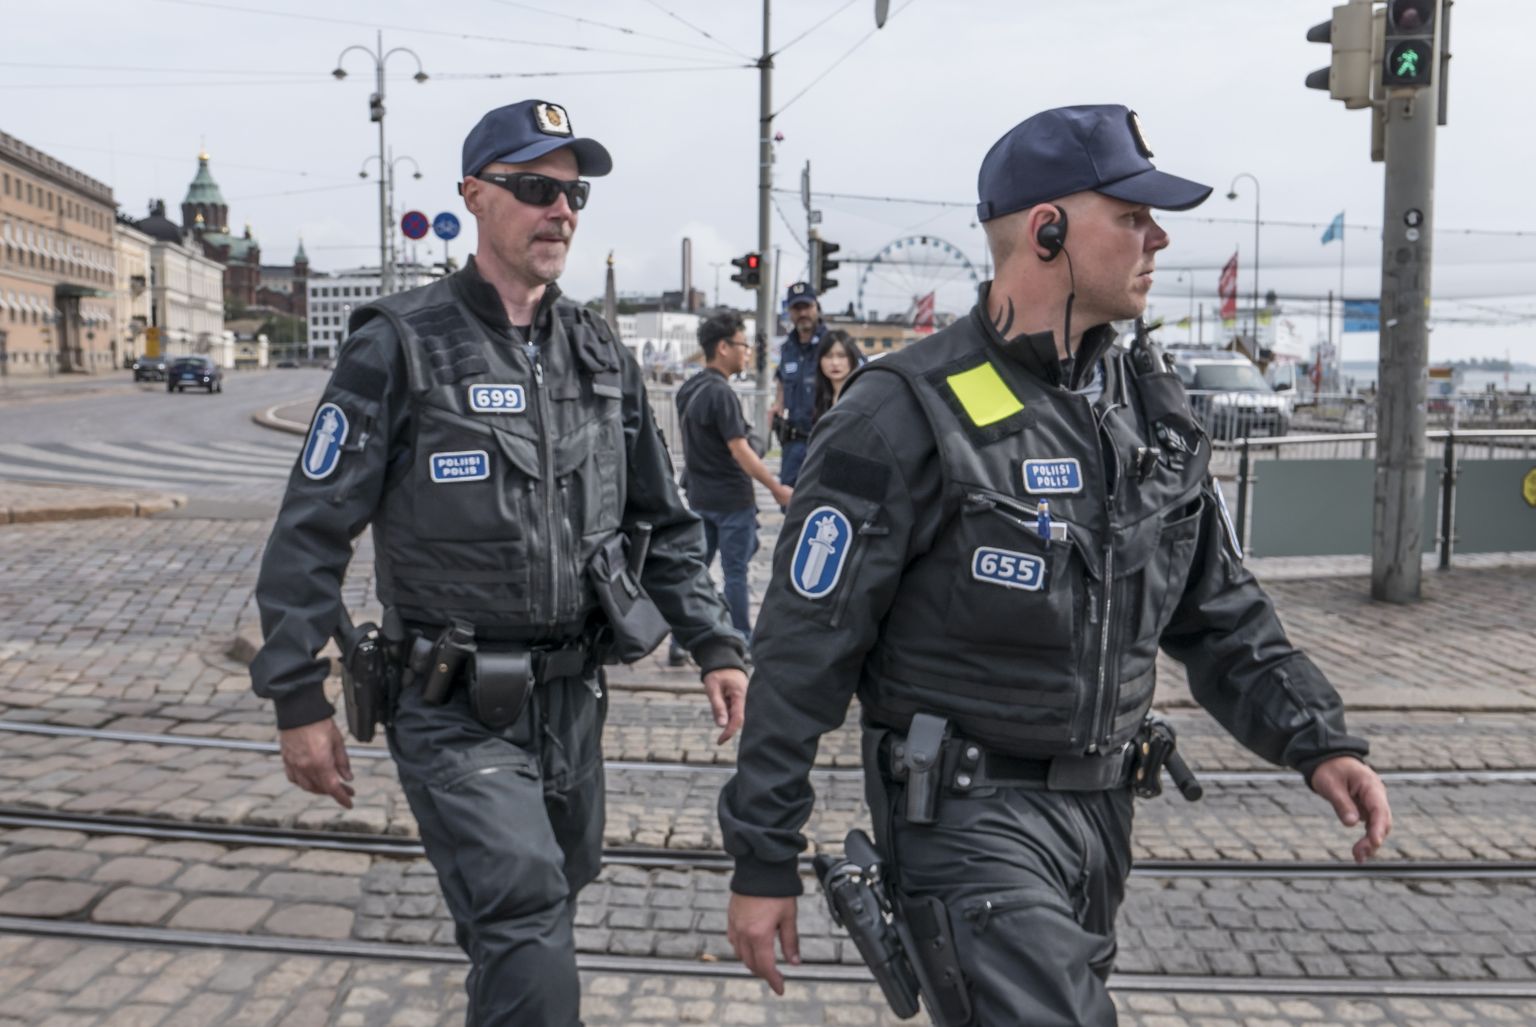 Soome politsei. Foto on illustratiivne.